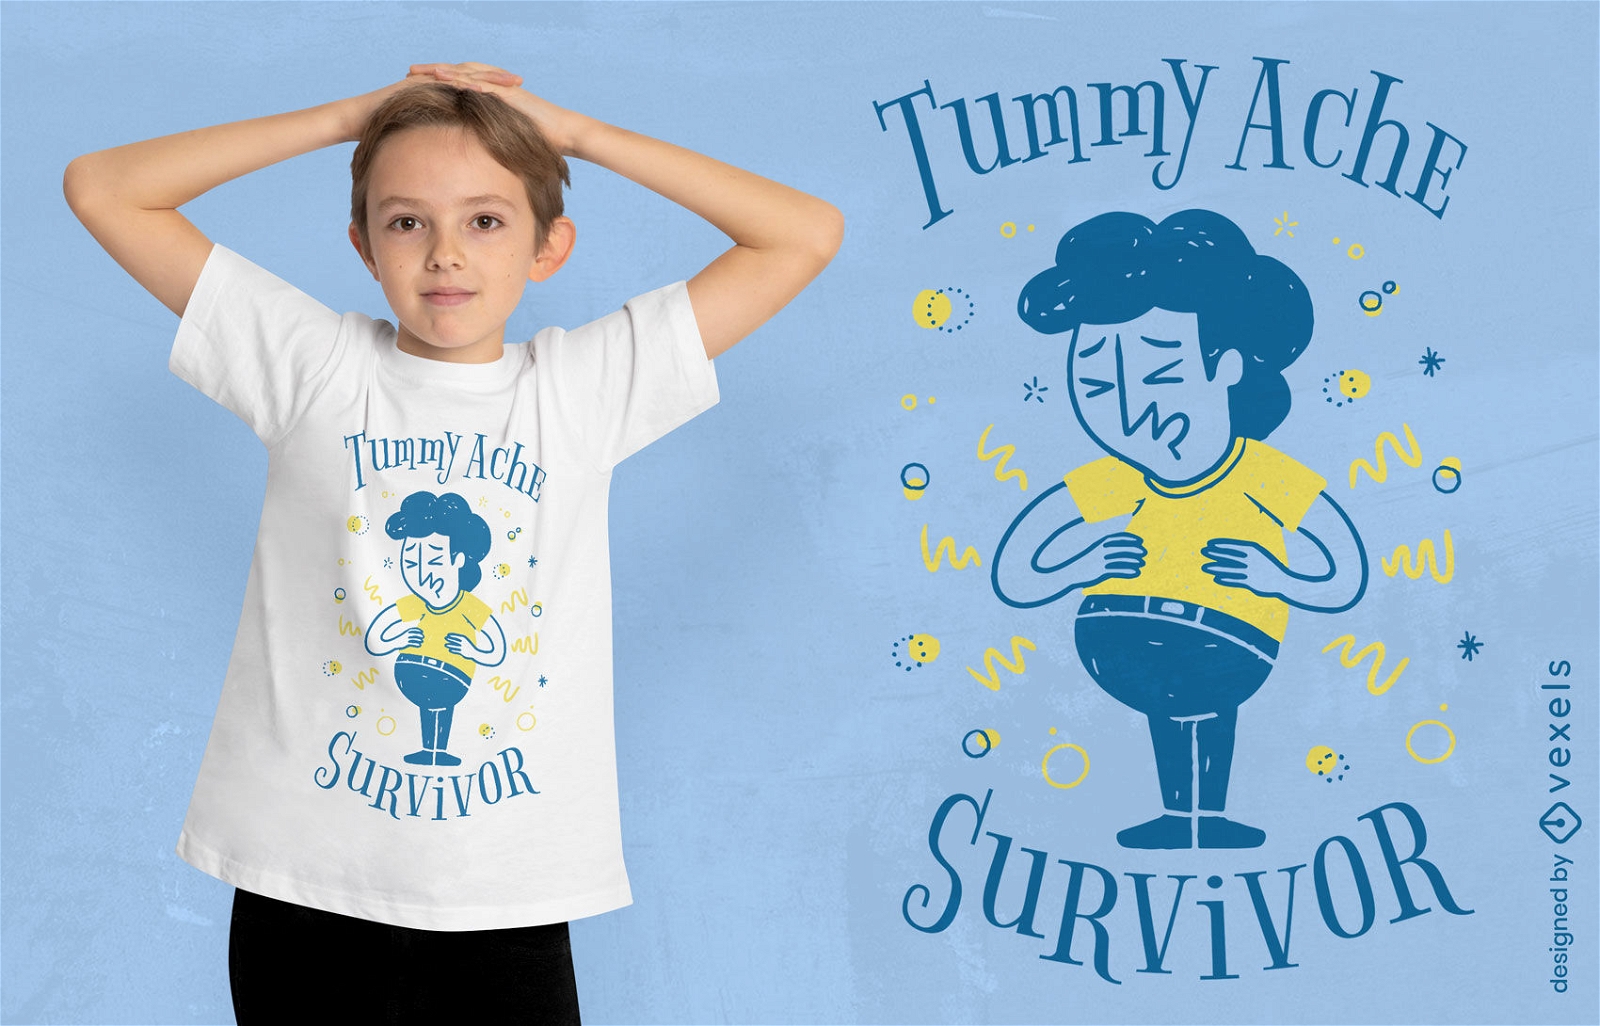 Tummy ache survivor t-shirt design